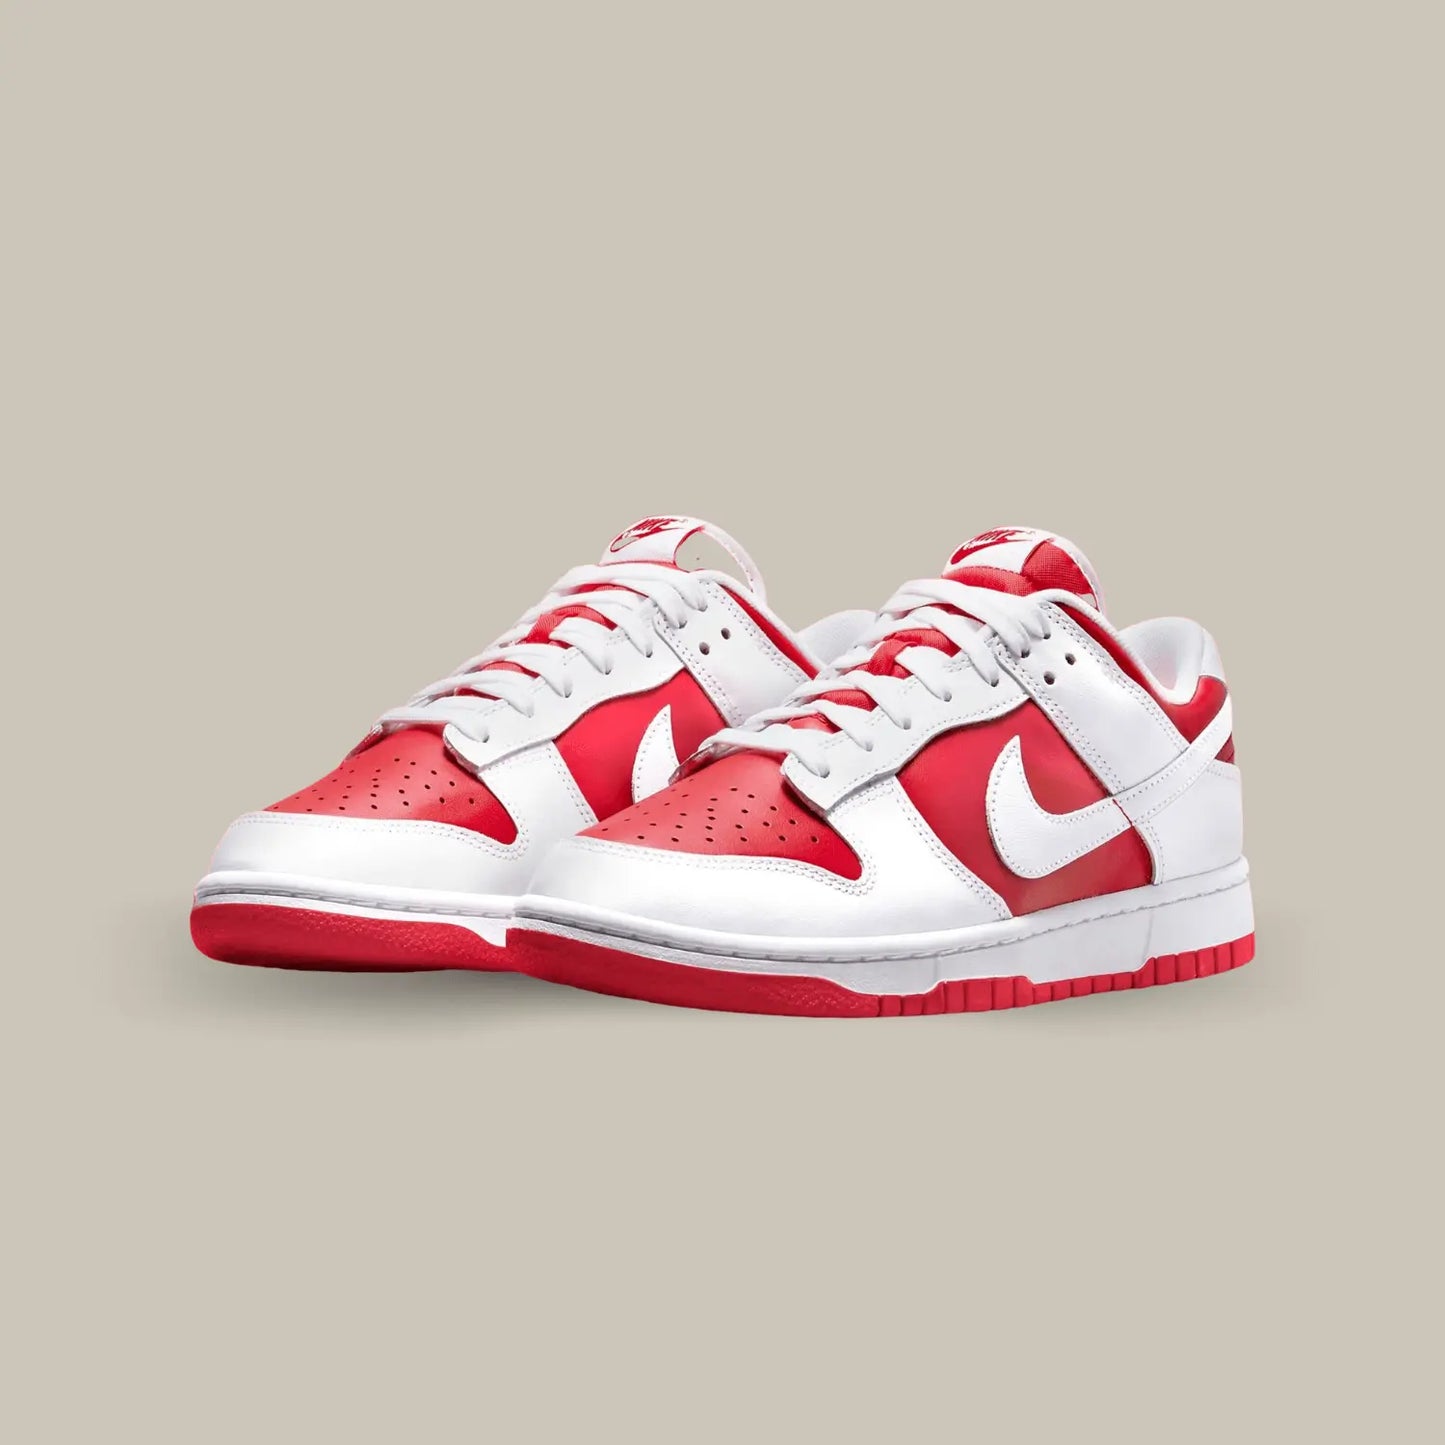 La Nike Dunk Low Championship Red présente une base en cuir rouge vif, sublimée par des superpositions en cuir blanc.